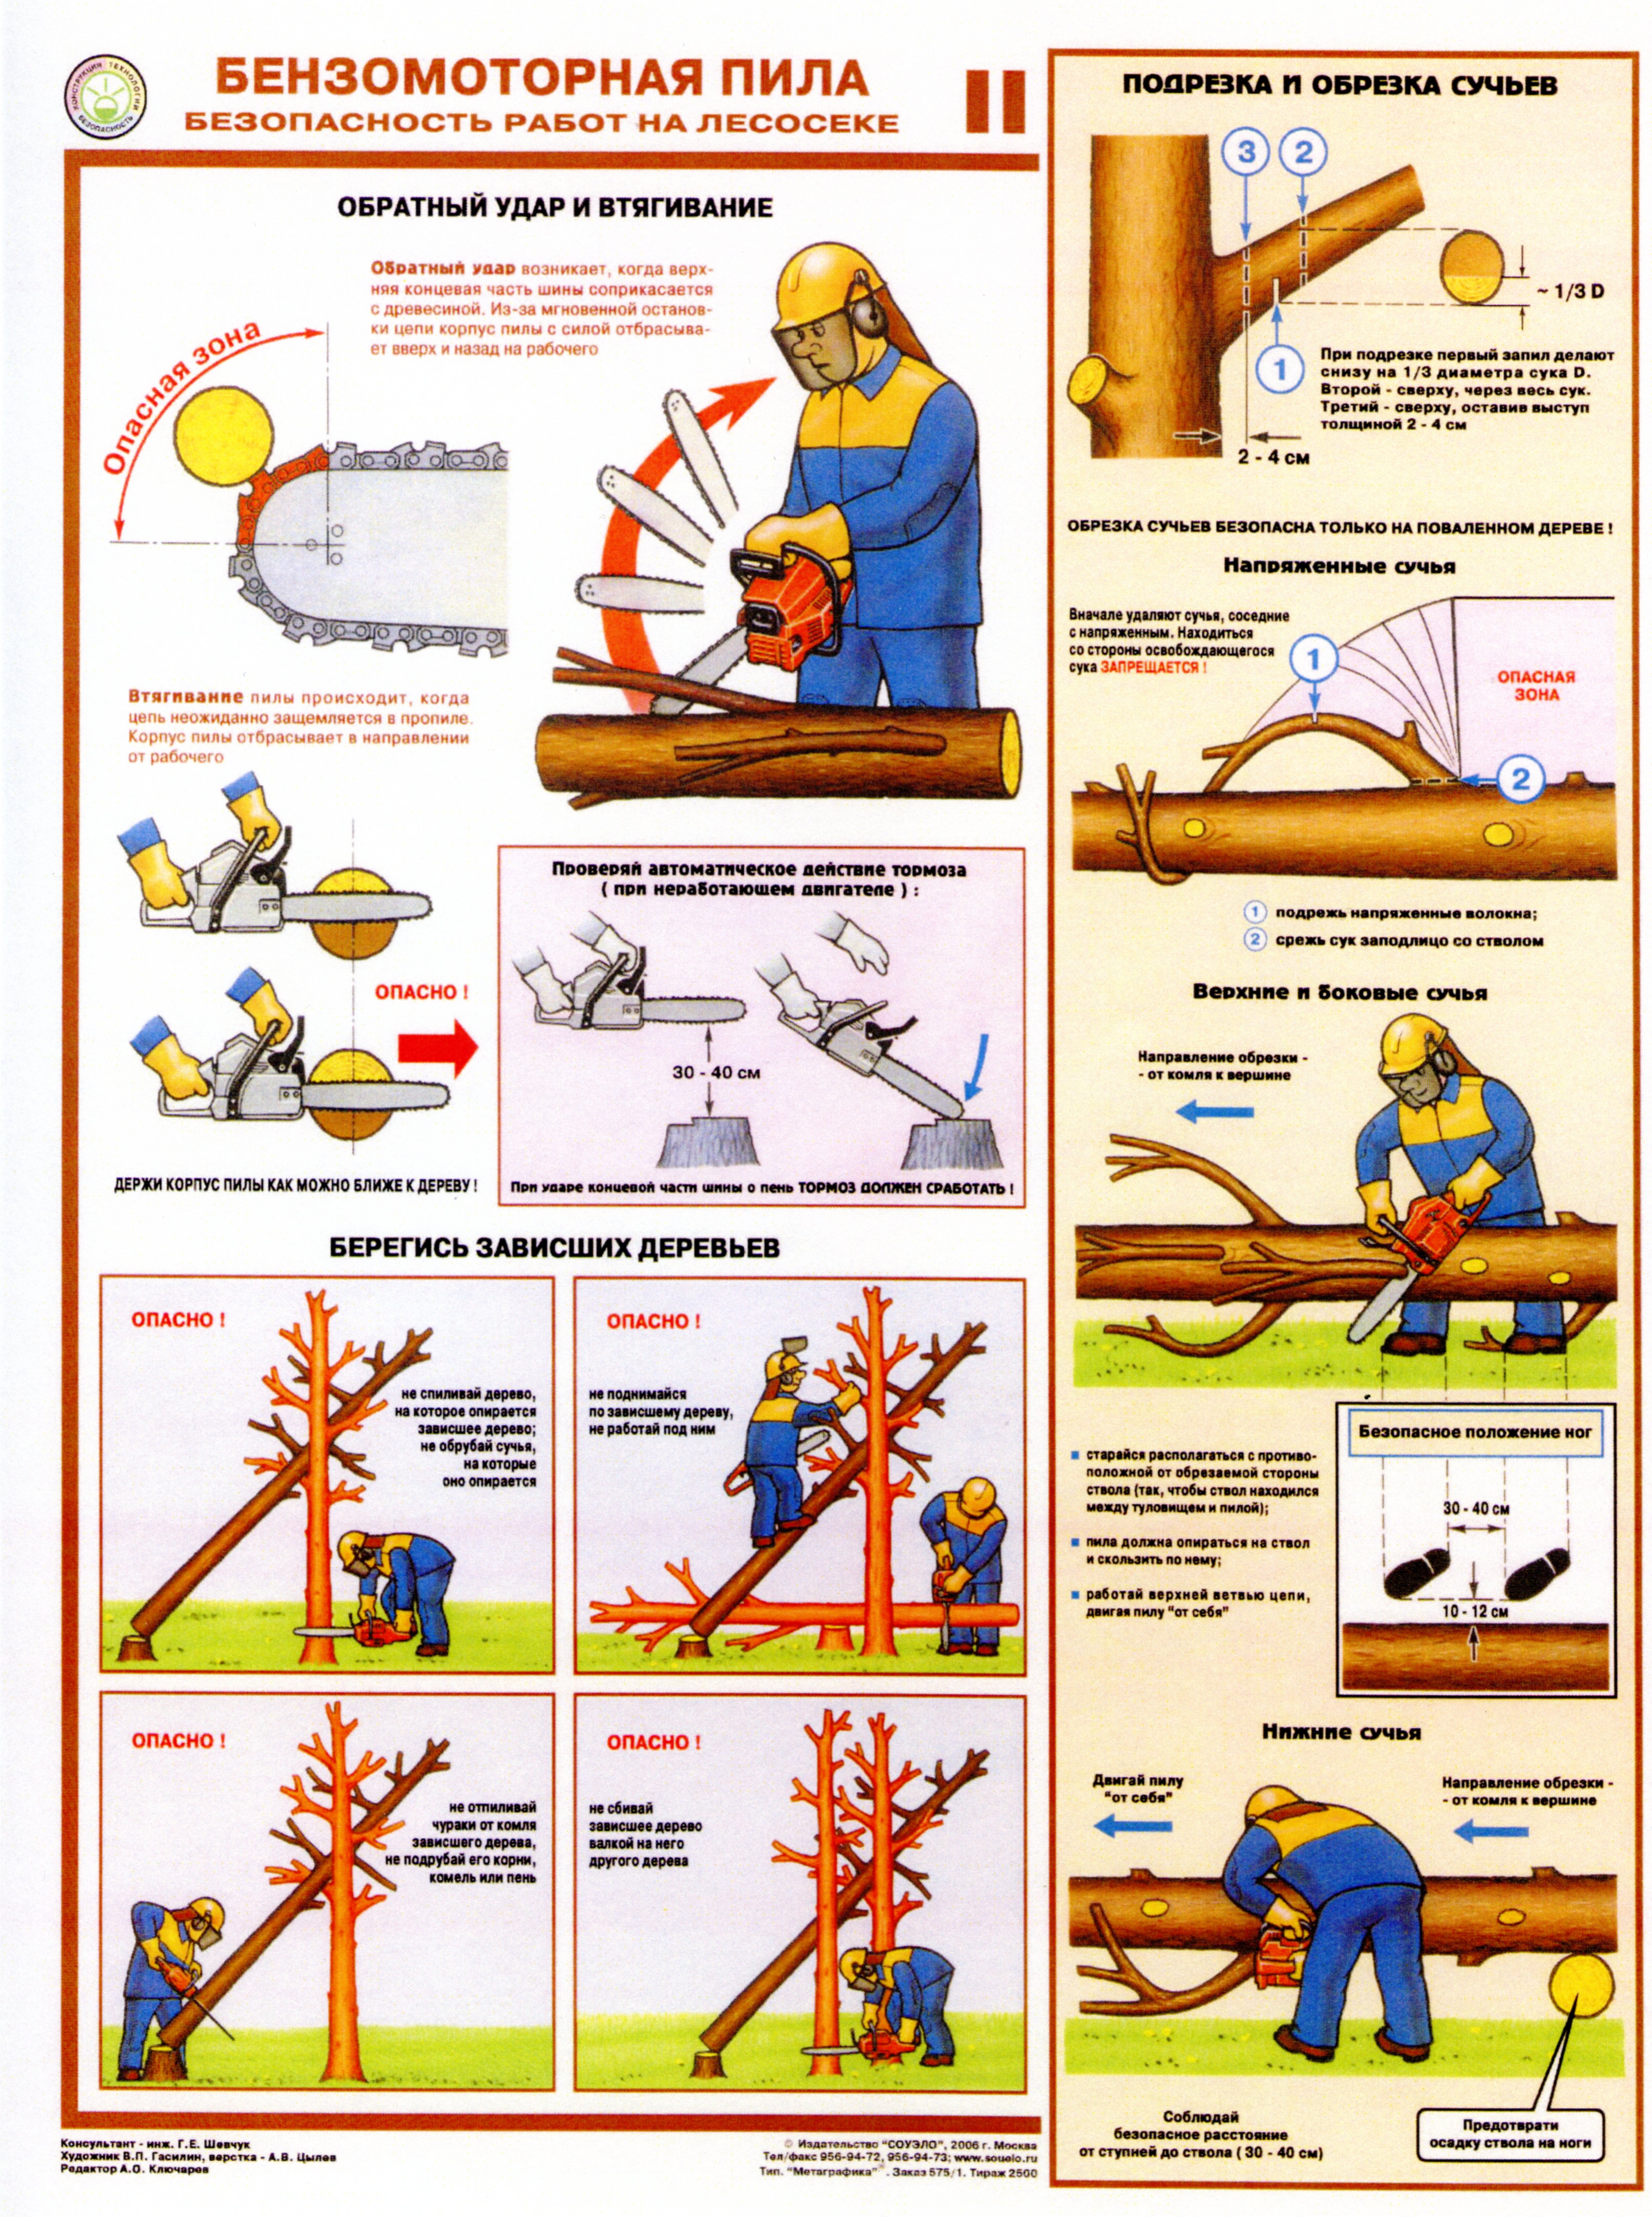 Инструкции по охране труда для вальщика леса и лесоруба